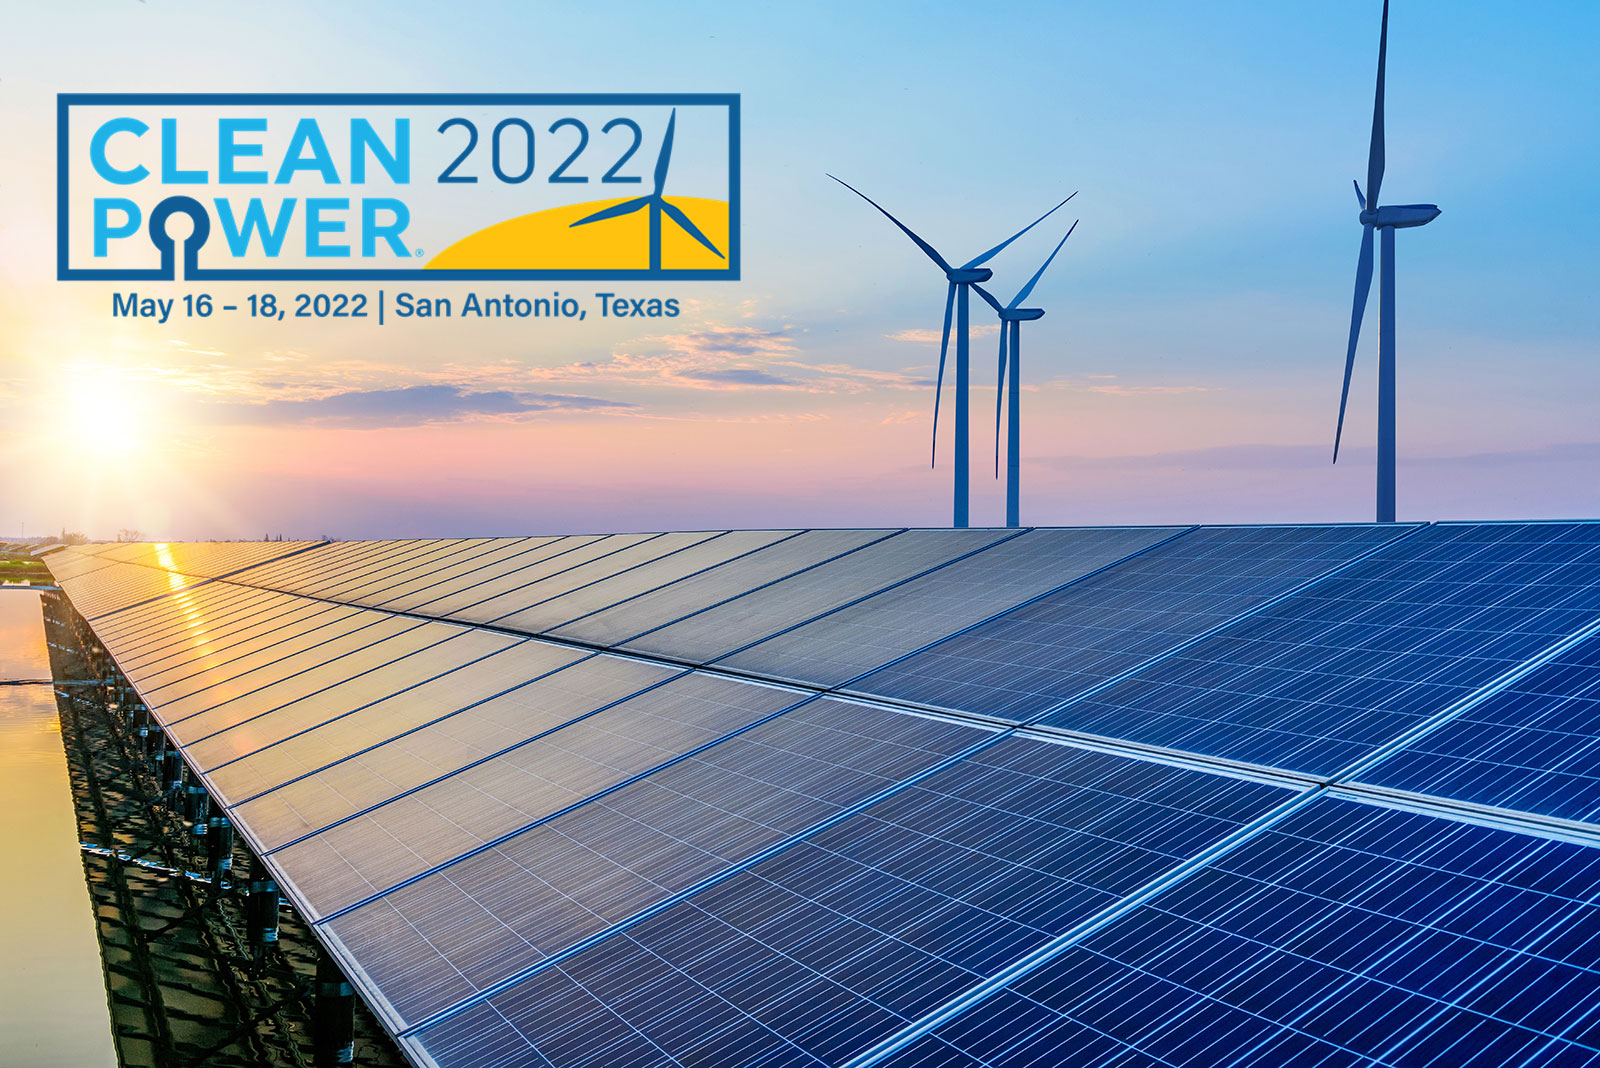 Skeleton的风能和电网行业解决方案将在Cleanpower 2022上展出